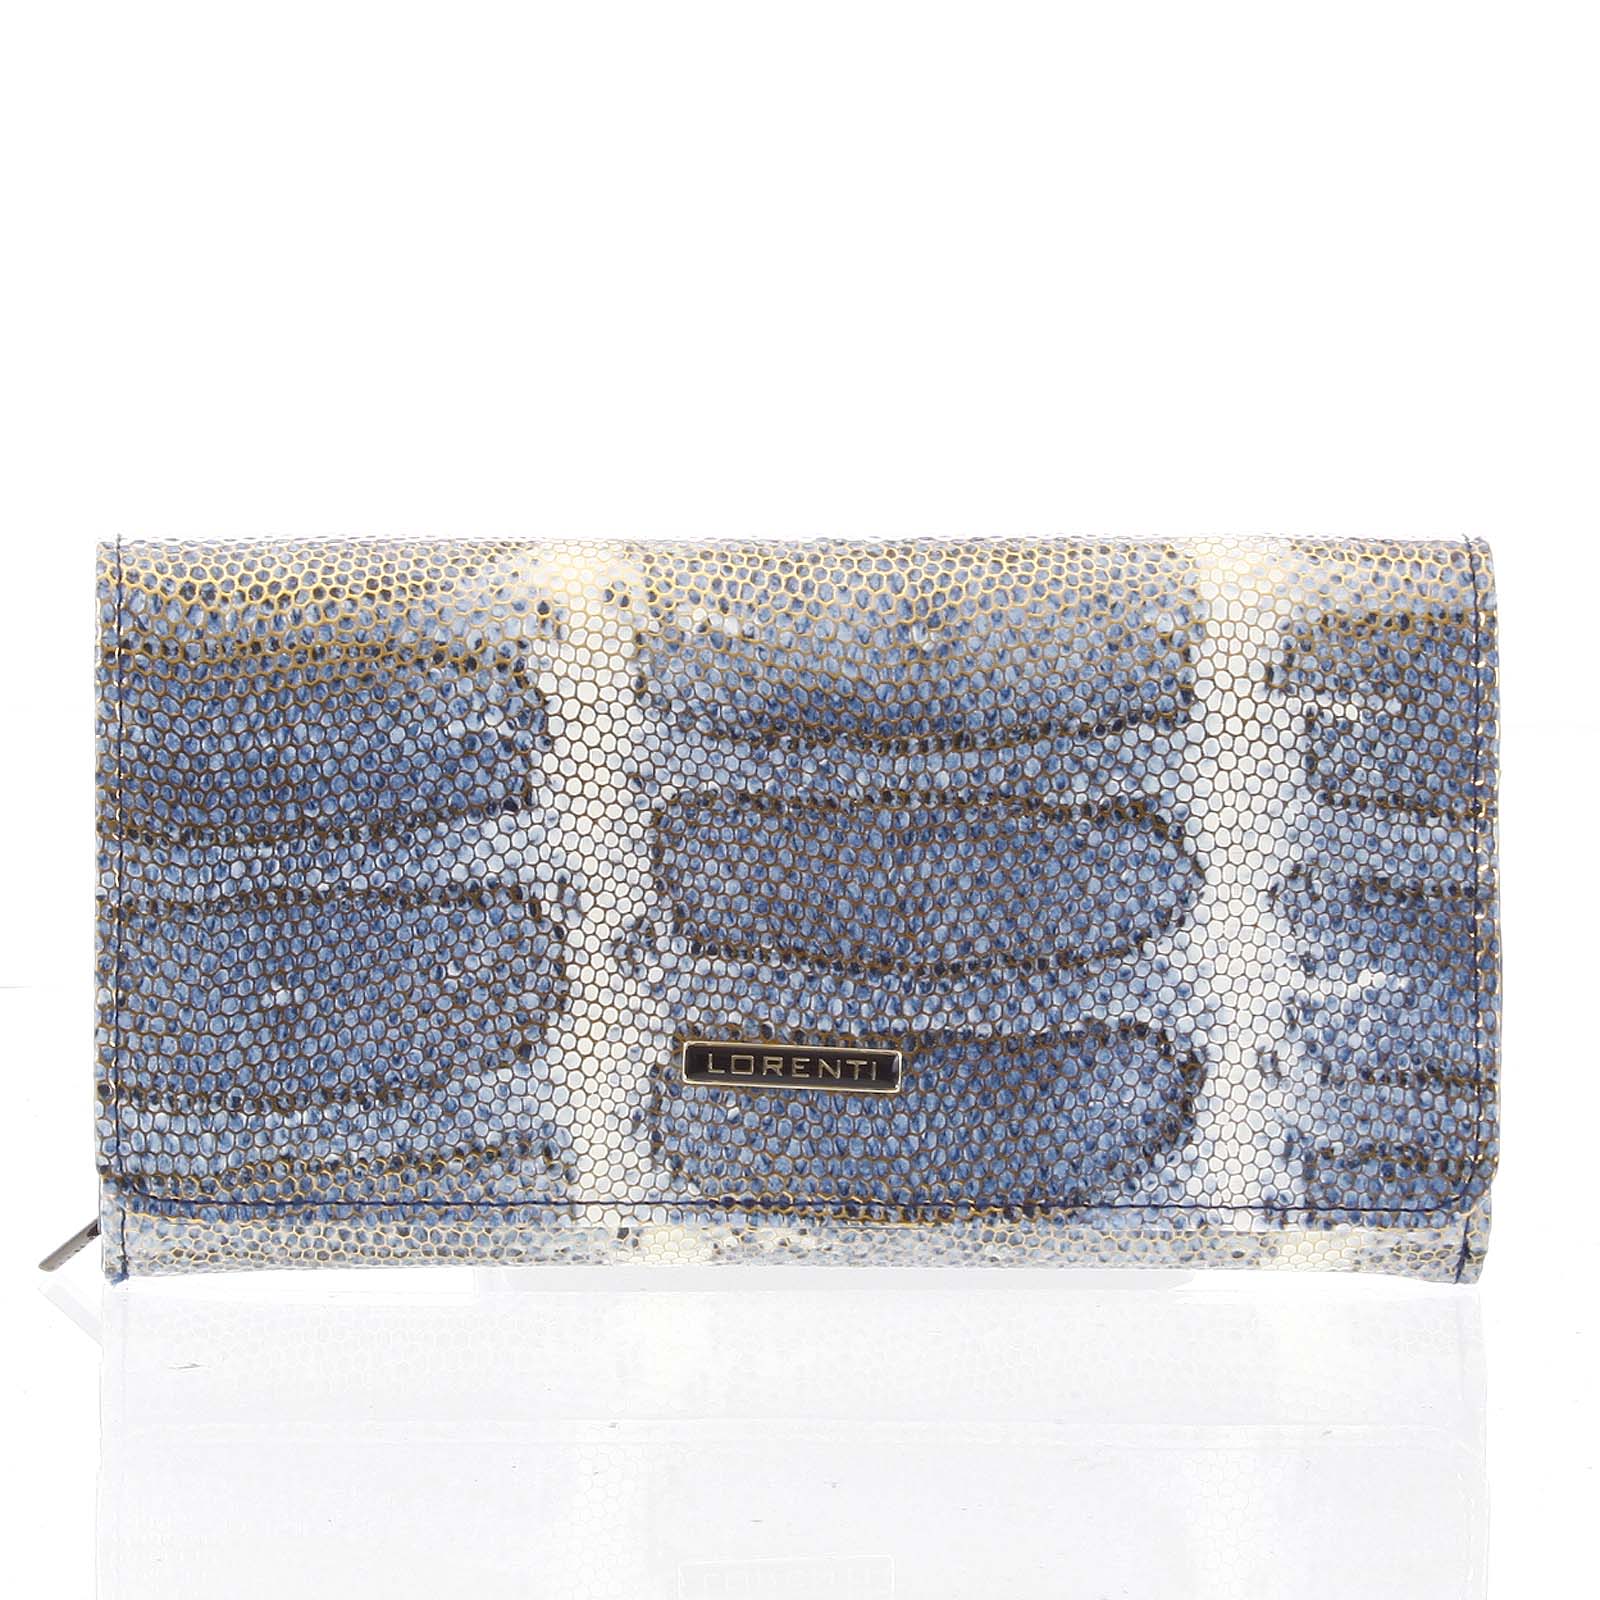 Velká modrá kožená lakovaná peněženka se zlatým vzorem- Lorenti 107SK